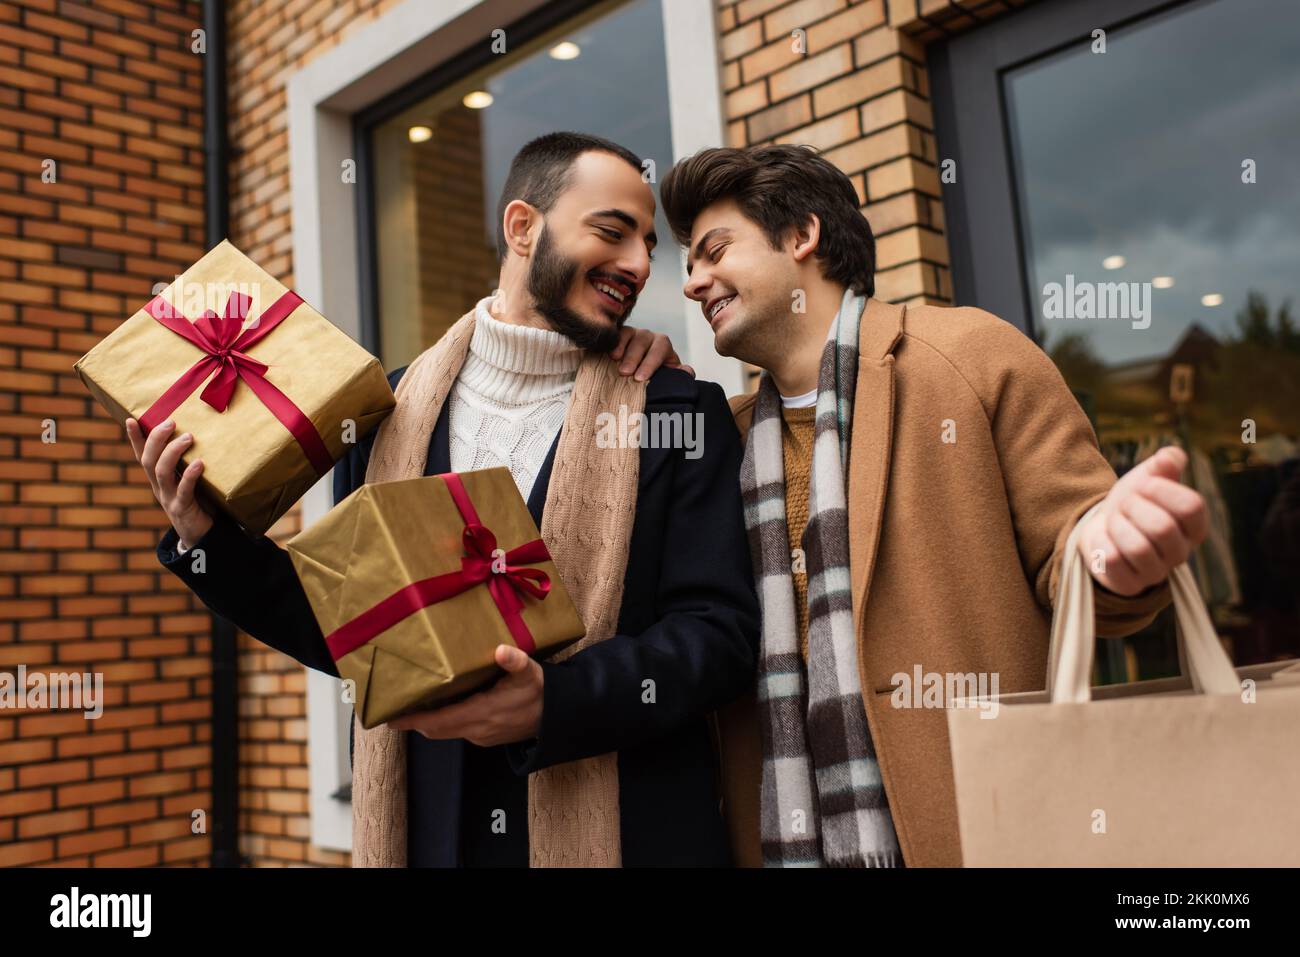 Coppia gay trendy con regali di Natale e shopping bag sorridente vicino al negozio con vetrine sulla strada della città, immagine stock Foto Stock